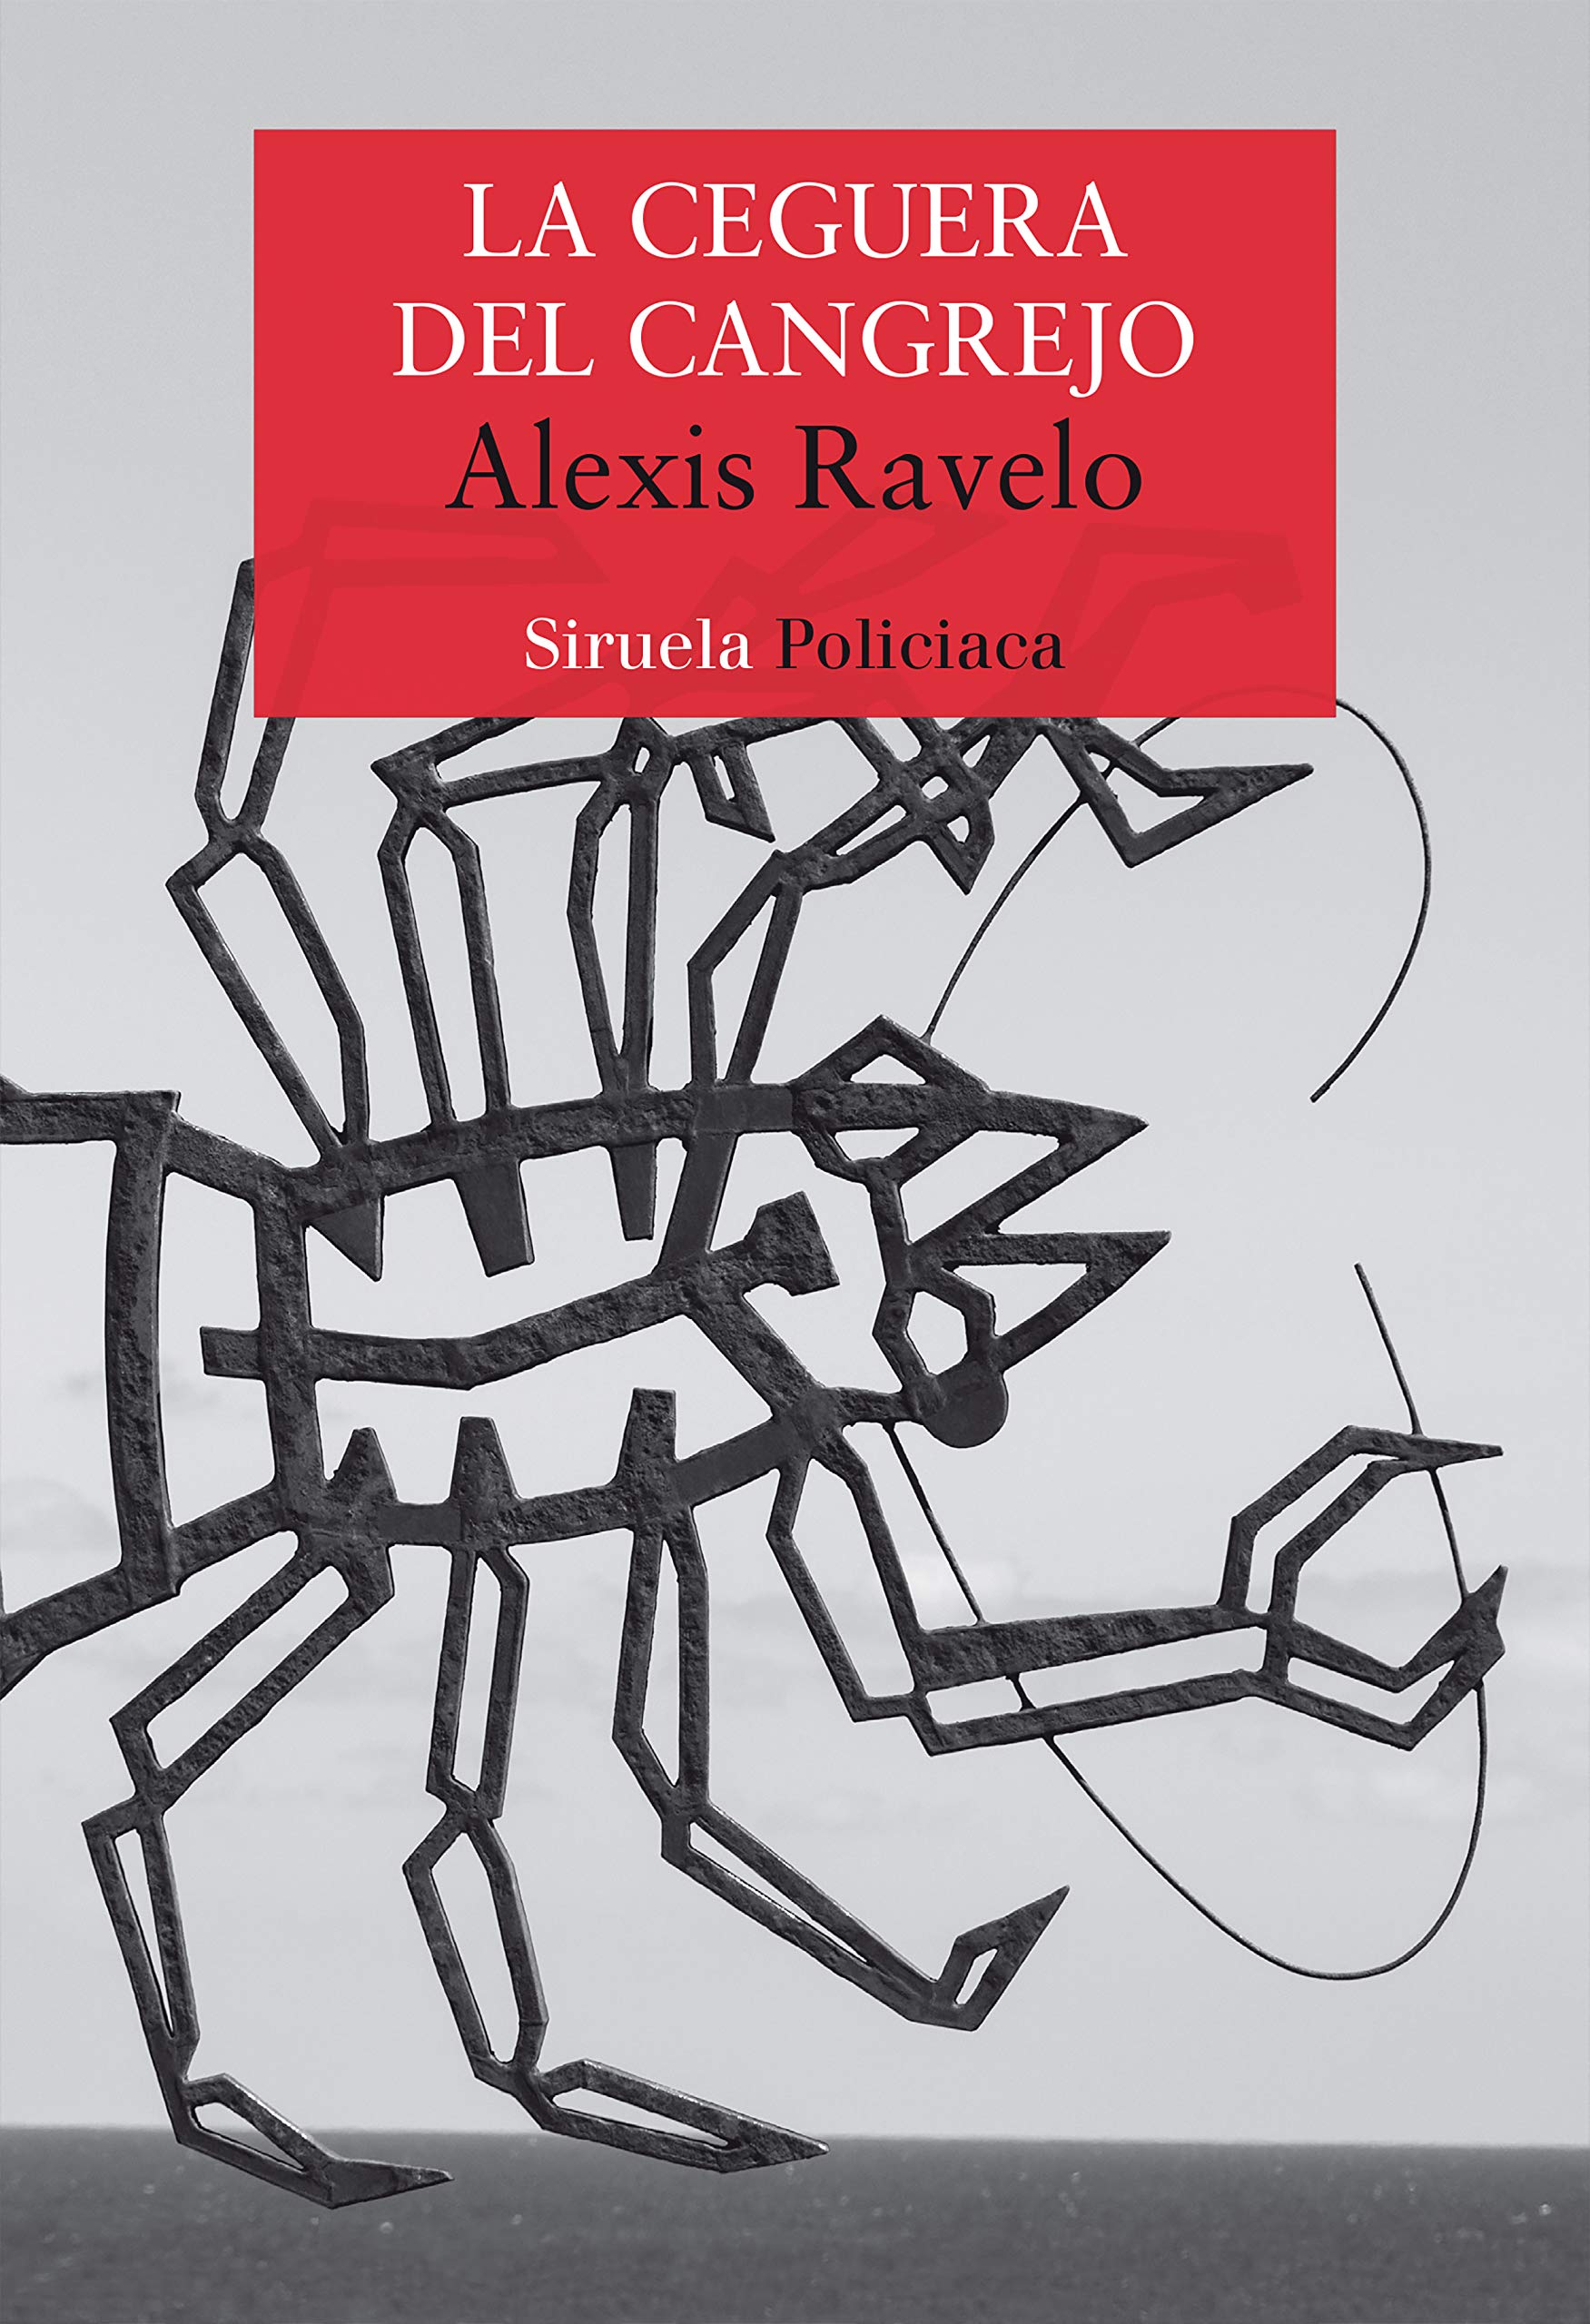 Zenda recomienda: La ceguera del cangrejo, de Alexis Ravelo